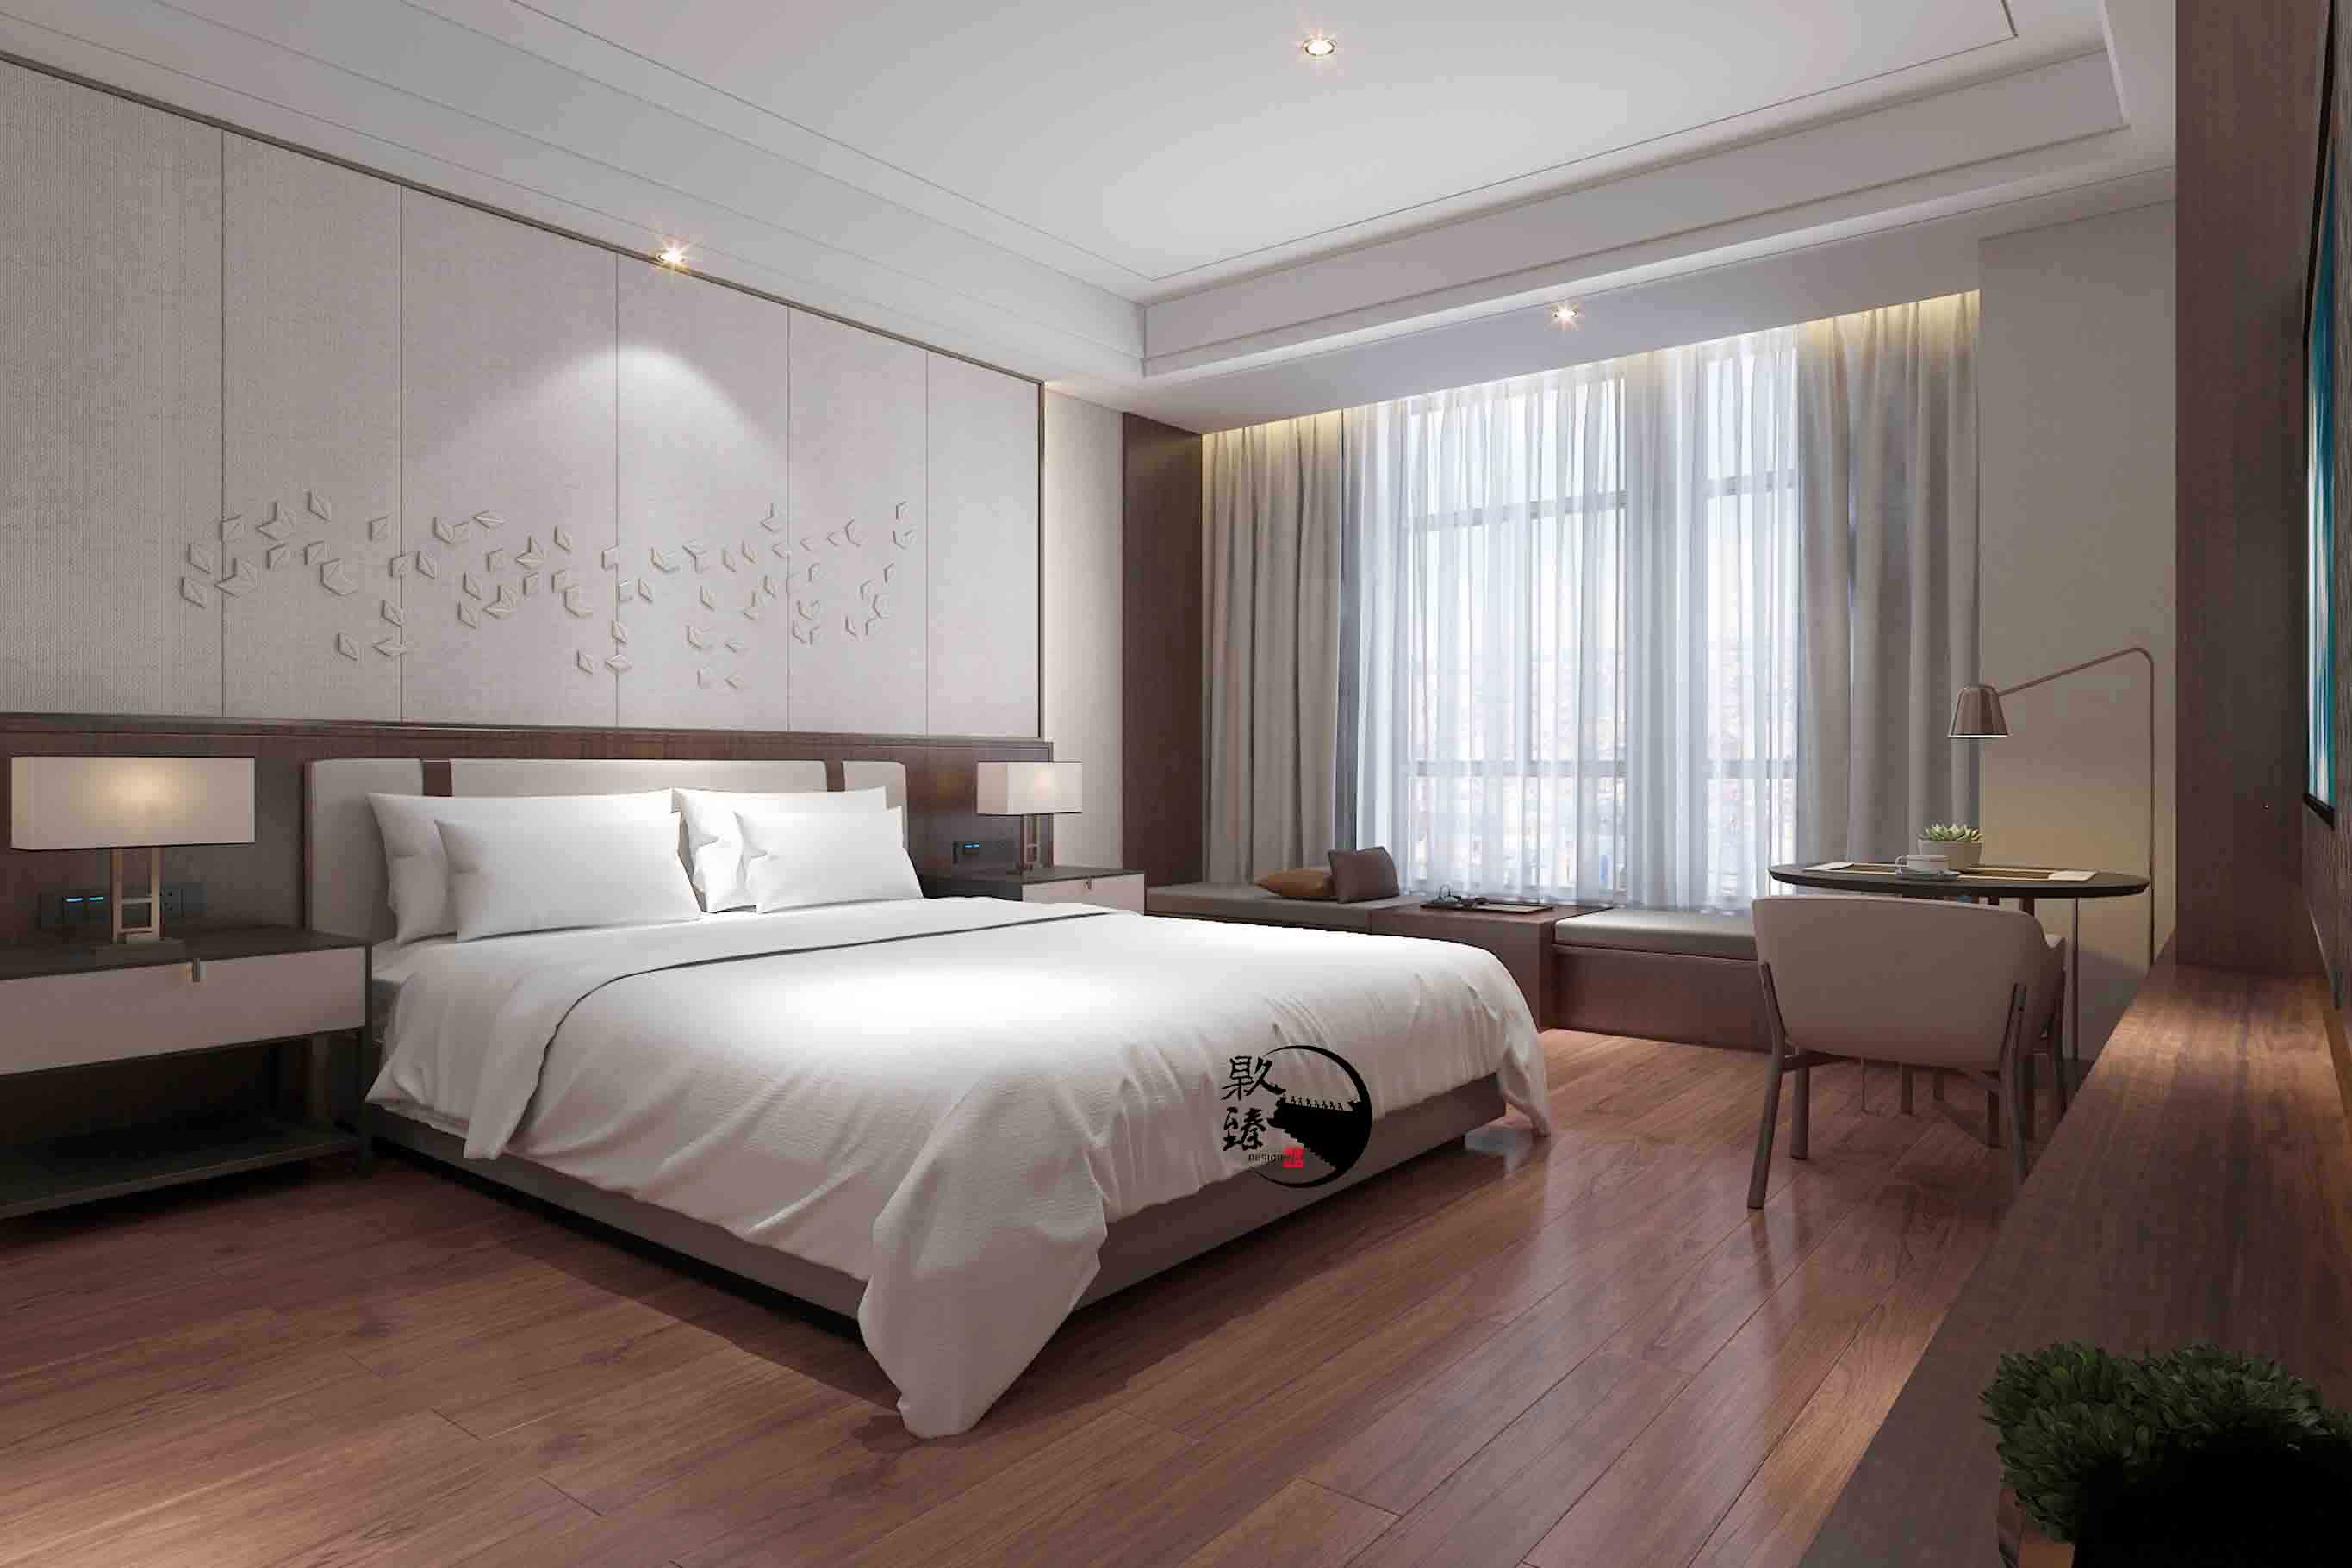 石嘴山米素酒店设计|满足客户对舒适和安静的需求